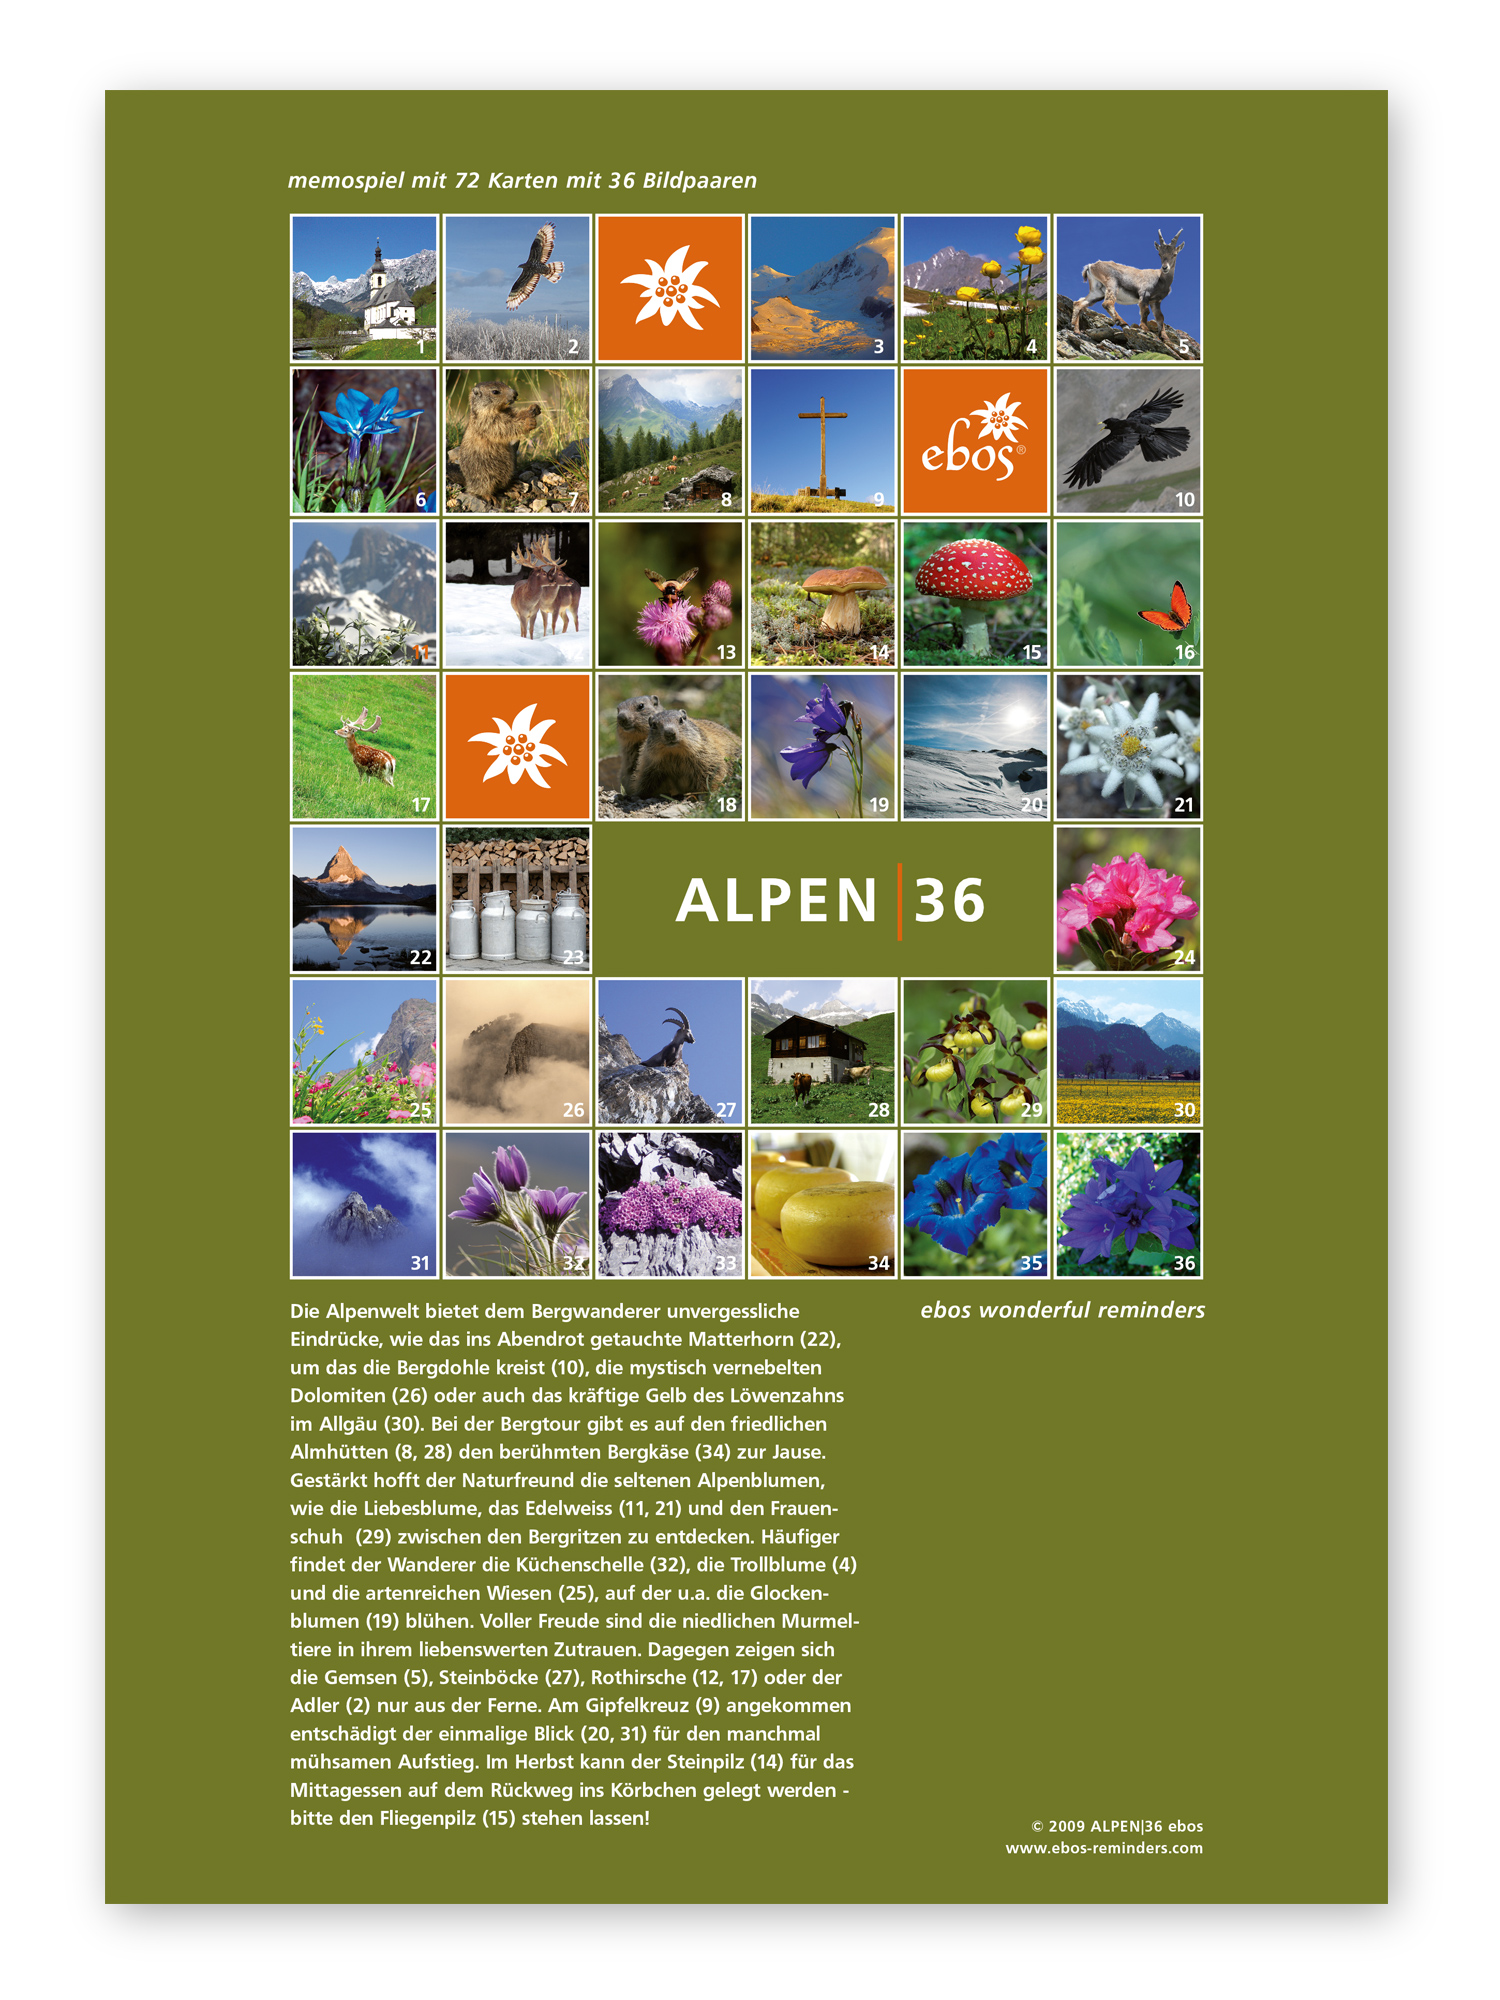 Memospiel Alpen für ebos von Sybs Bauer